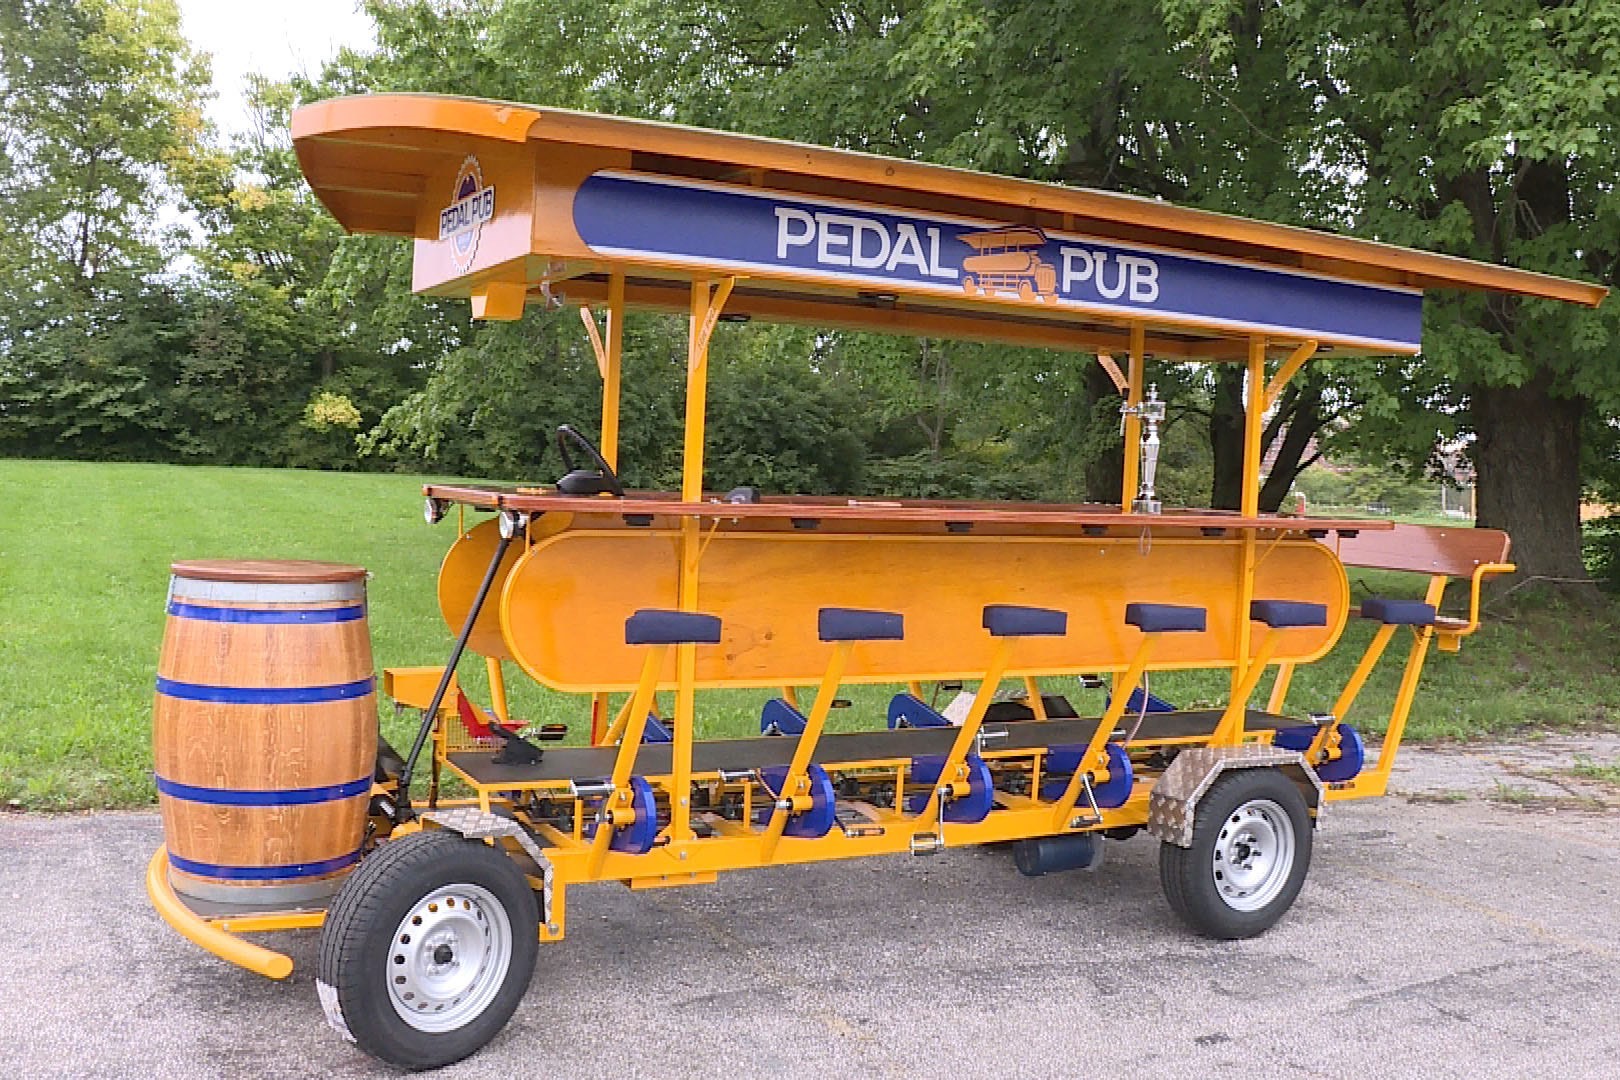 Pontieri said the Pedal Pub bikes cost around $60,000 to buy.